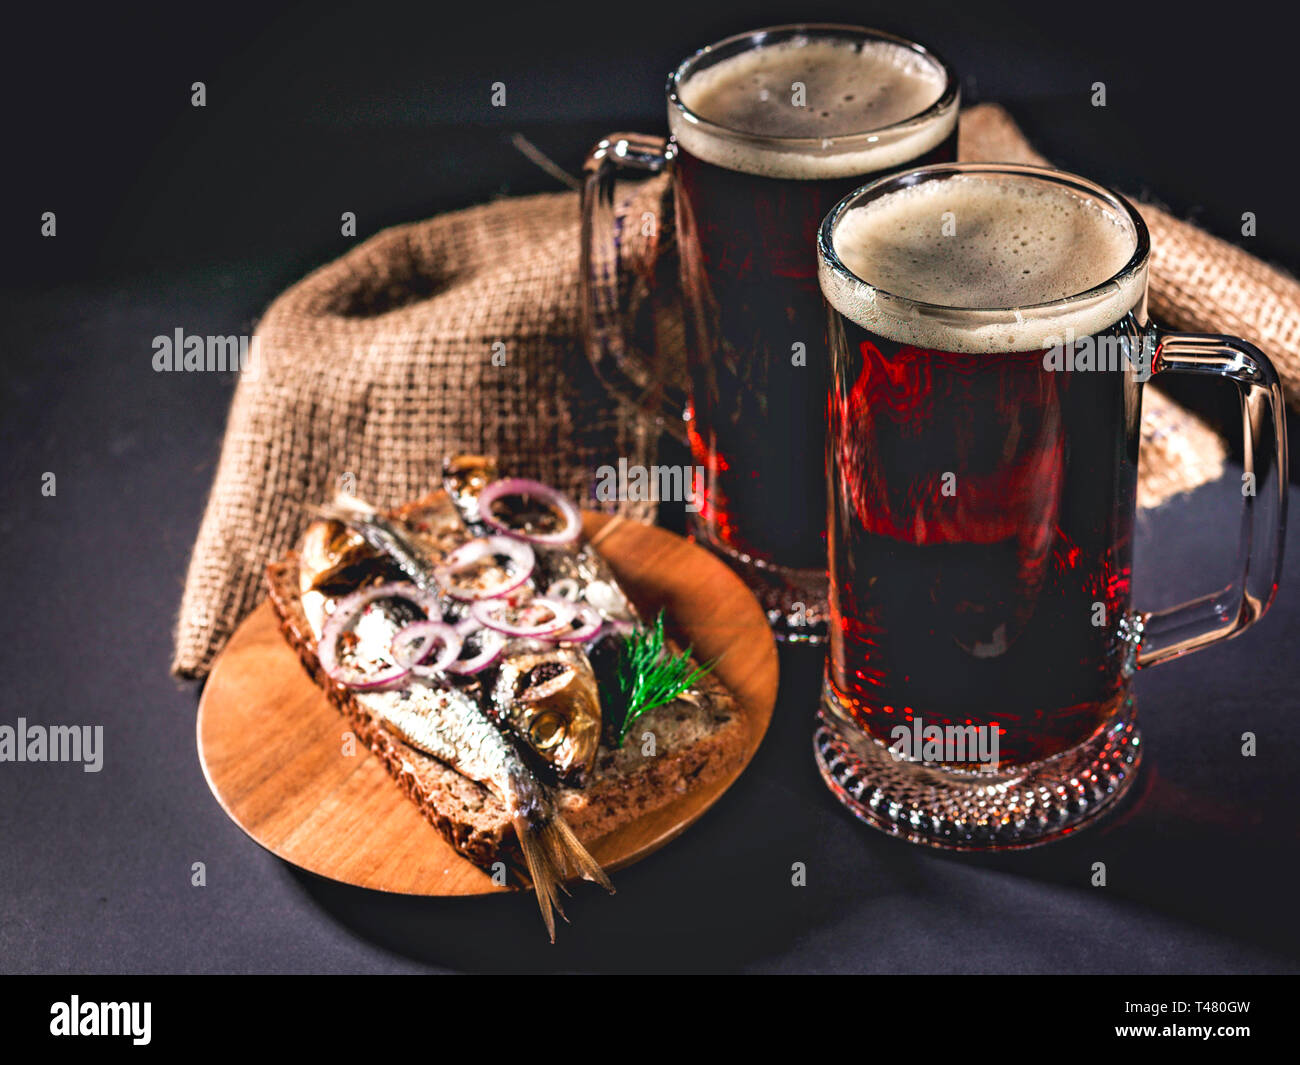 Cerveza artesanal, rojo pescado ahumado sándwich caliente sobre un fondo oscuro. Clave de baja iluminación. Foto de stock